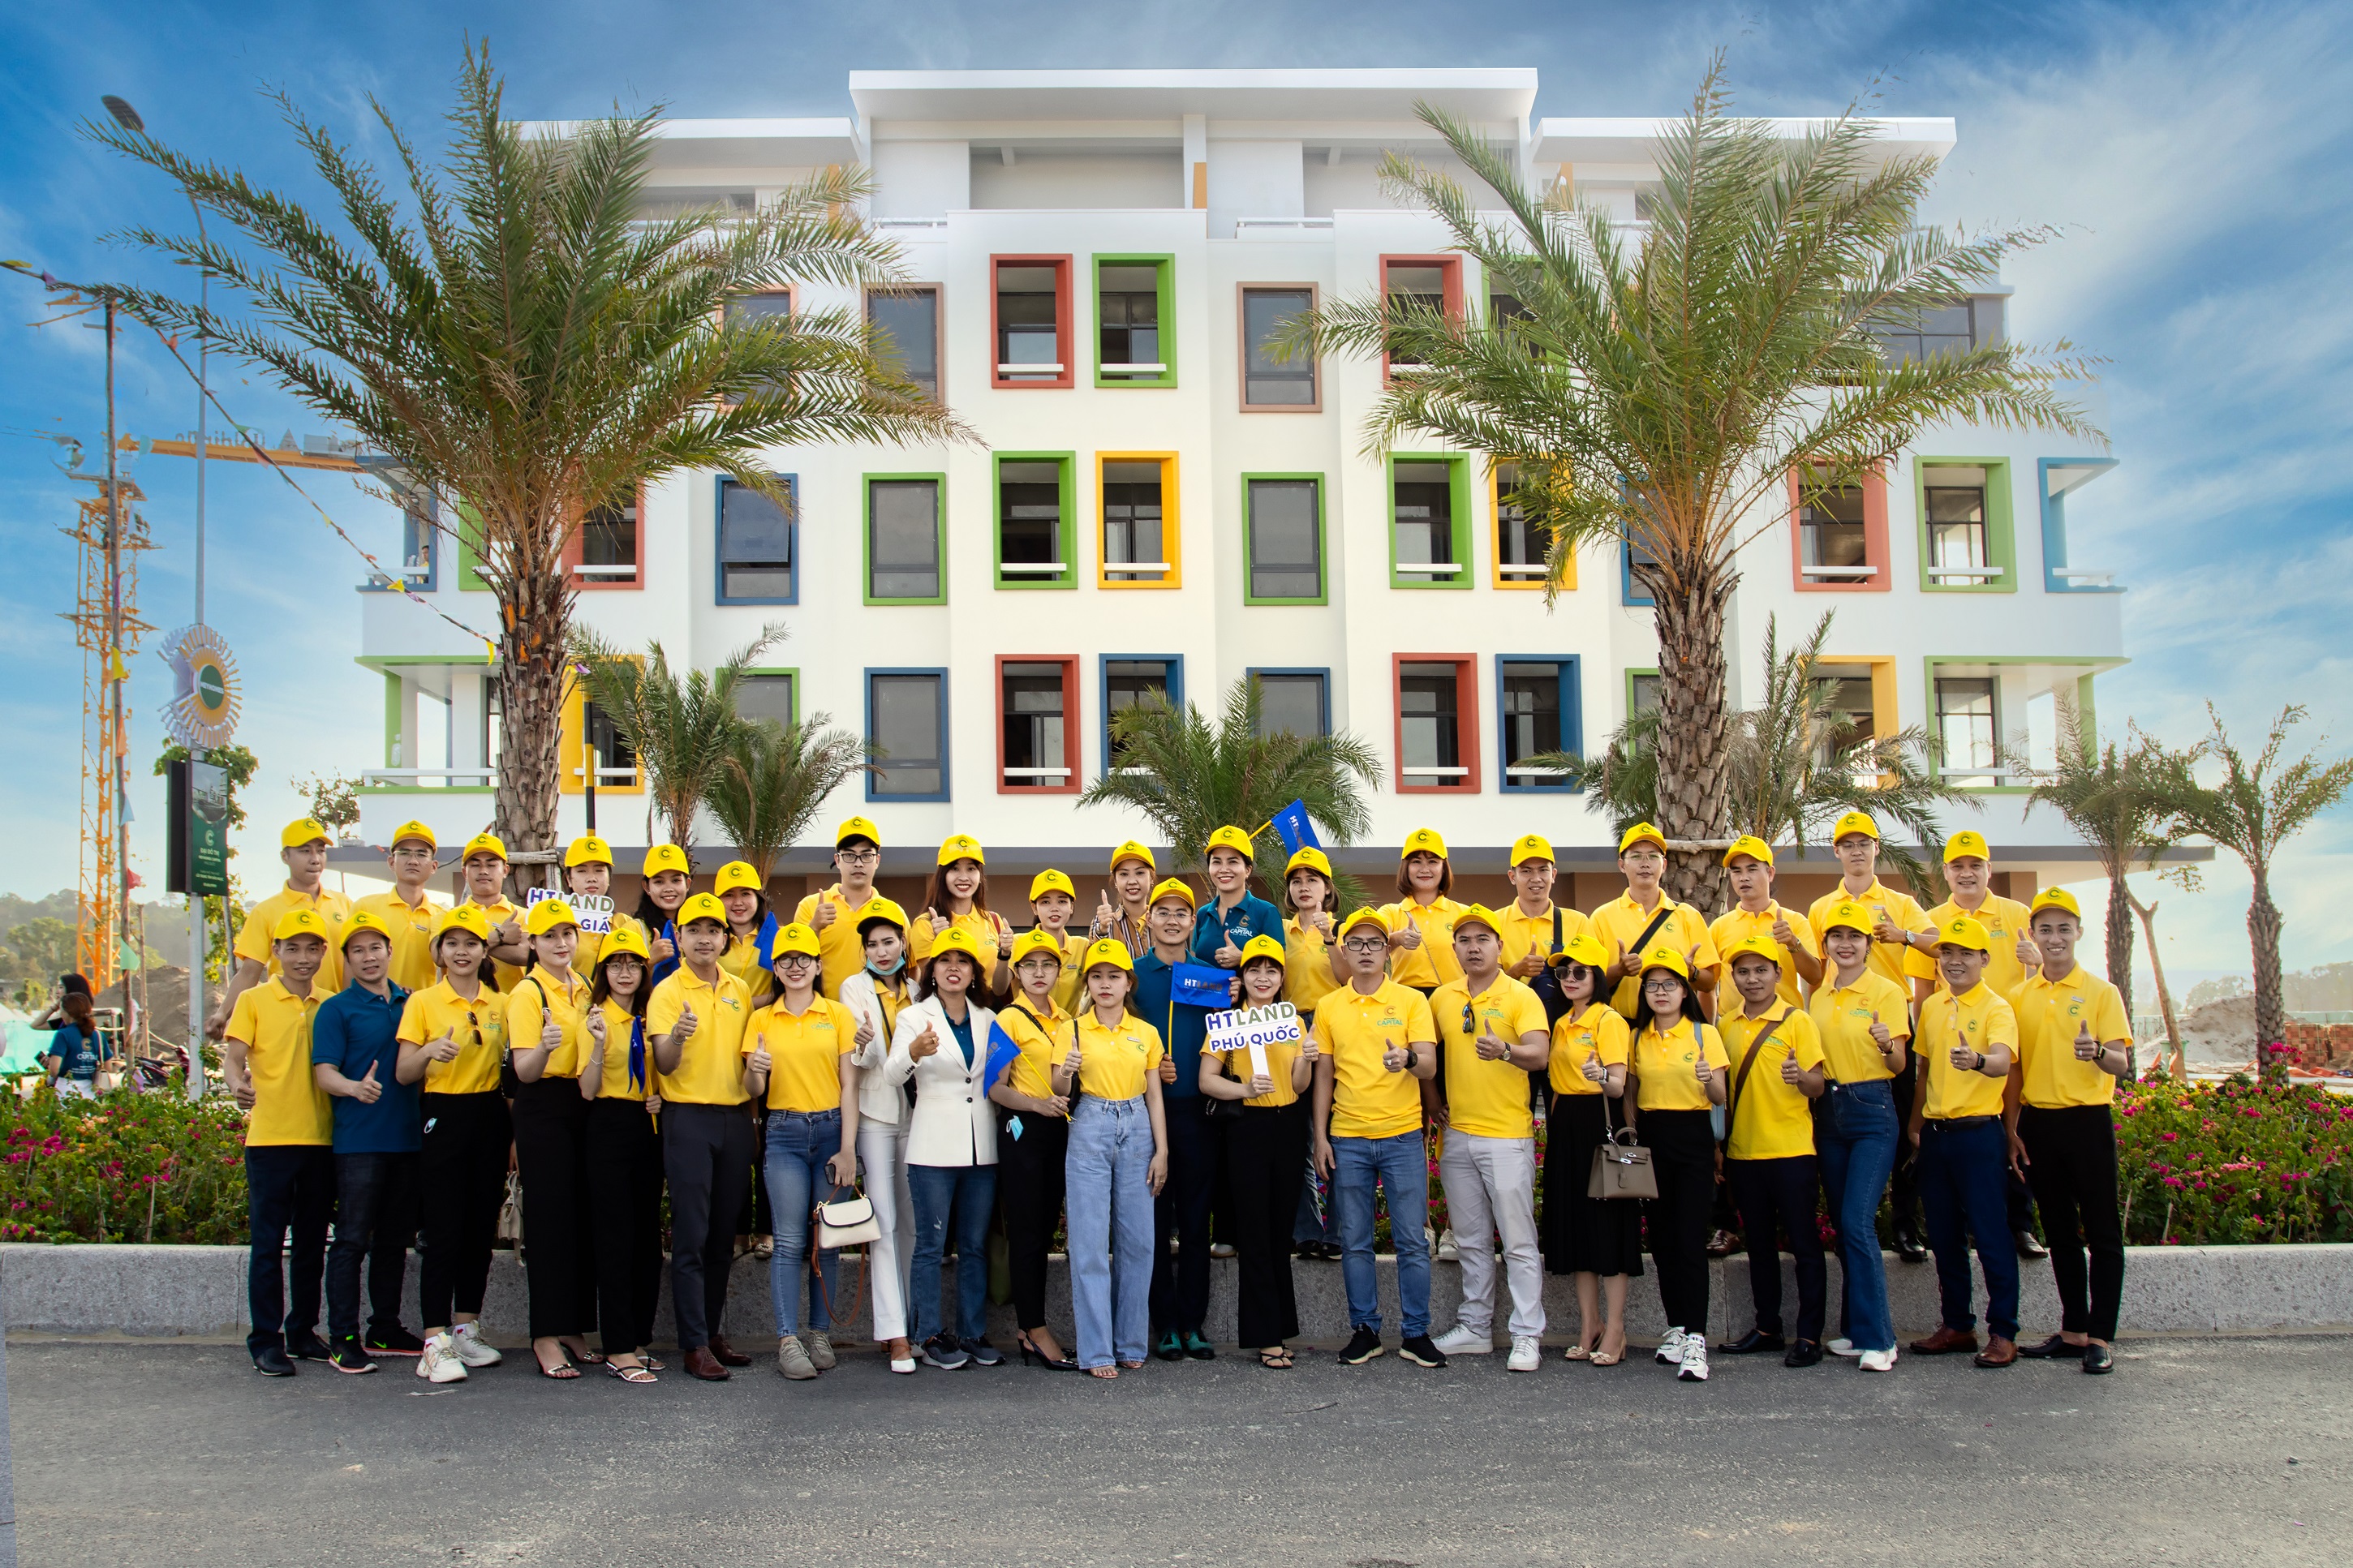 Trực tiếp thăm nhà mẫu và Bãi Trường (cách dự án 100m) giúp các “chiến binh” sales cảm nhận chân thực về Meyhomes Capital Phú Quốc